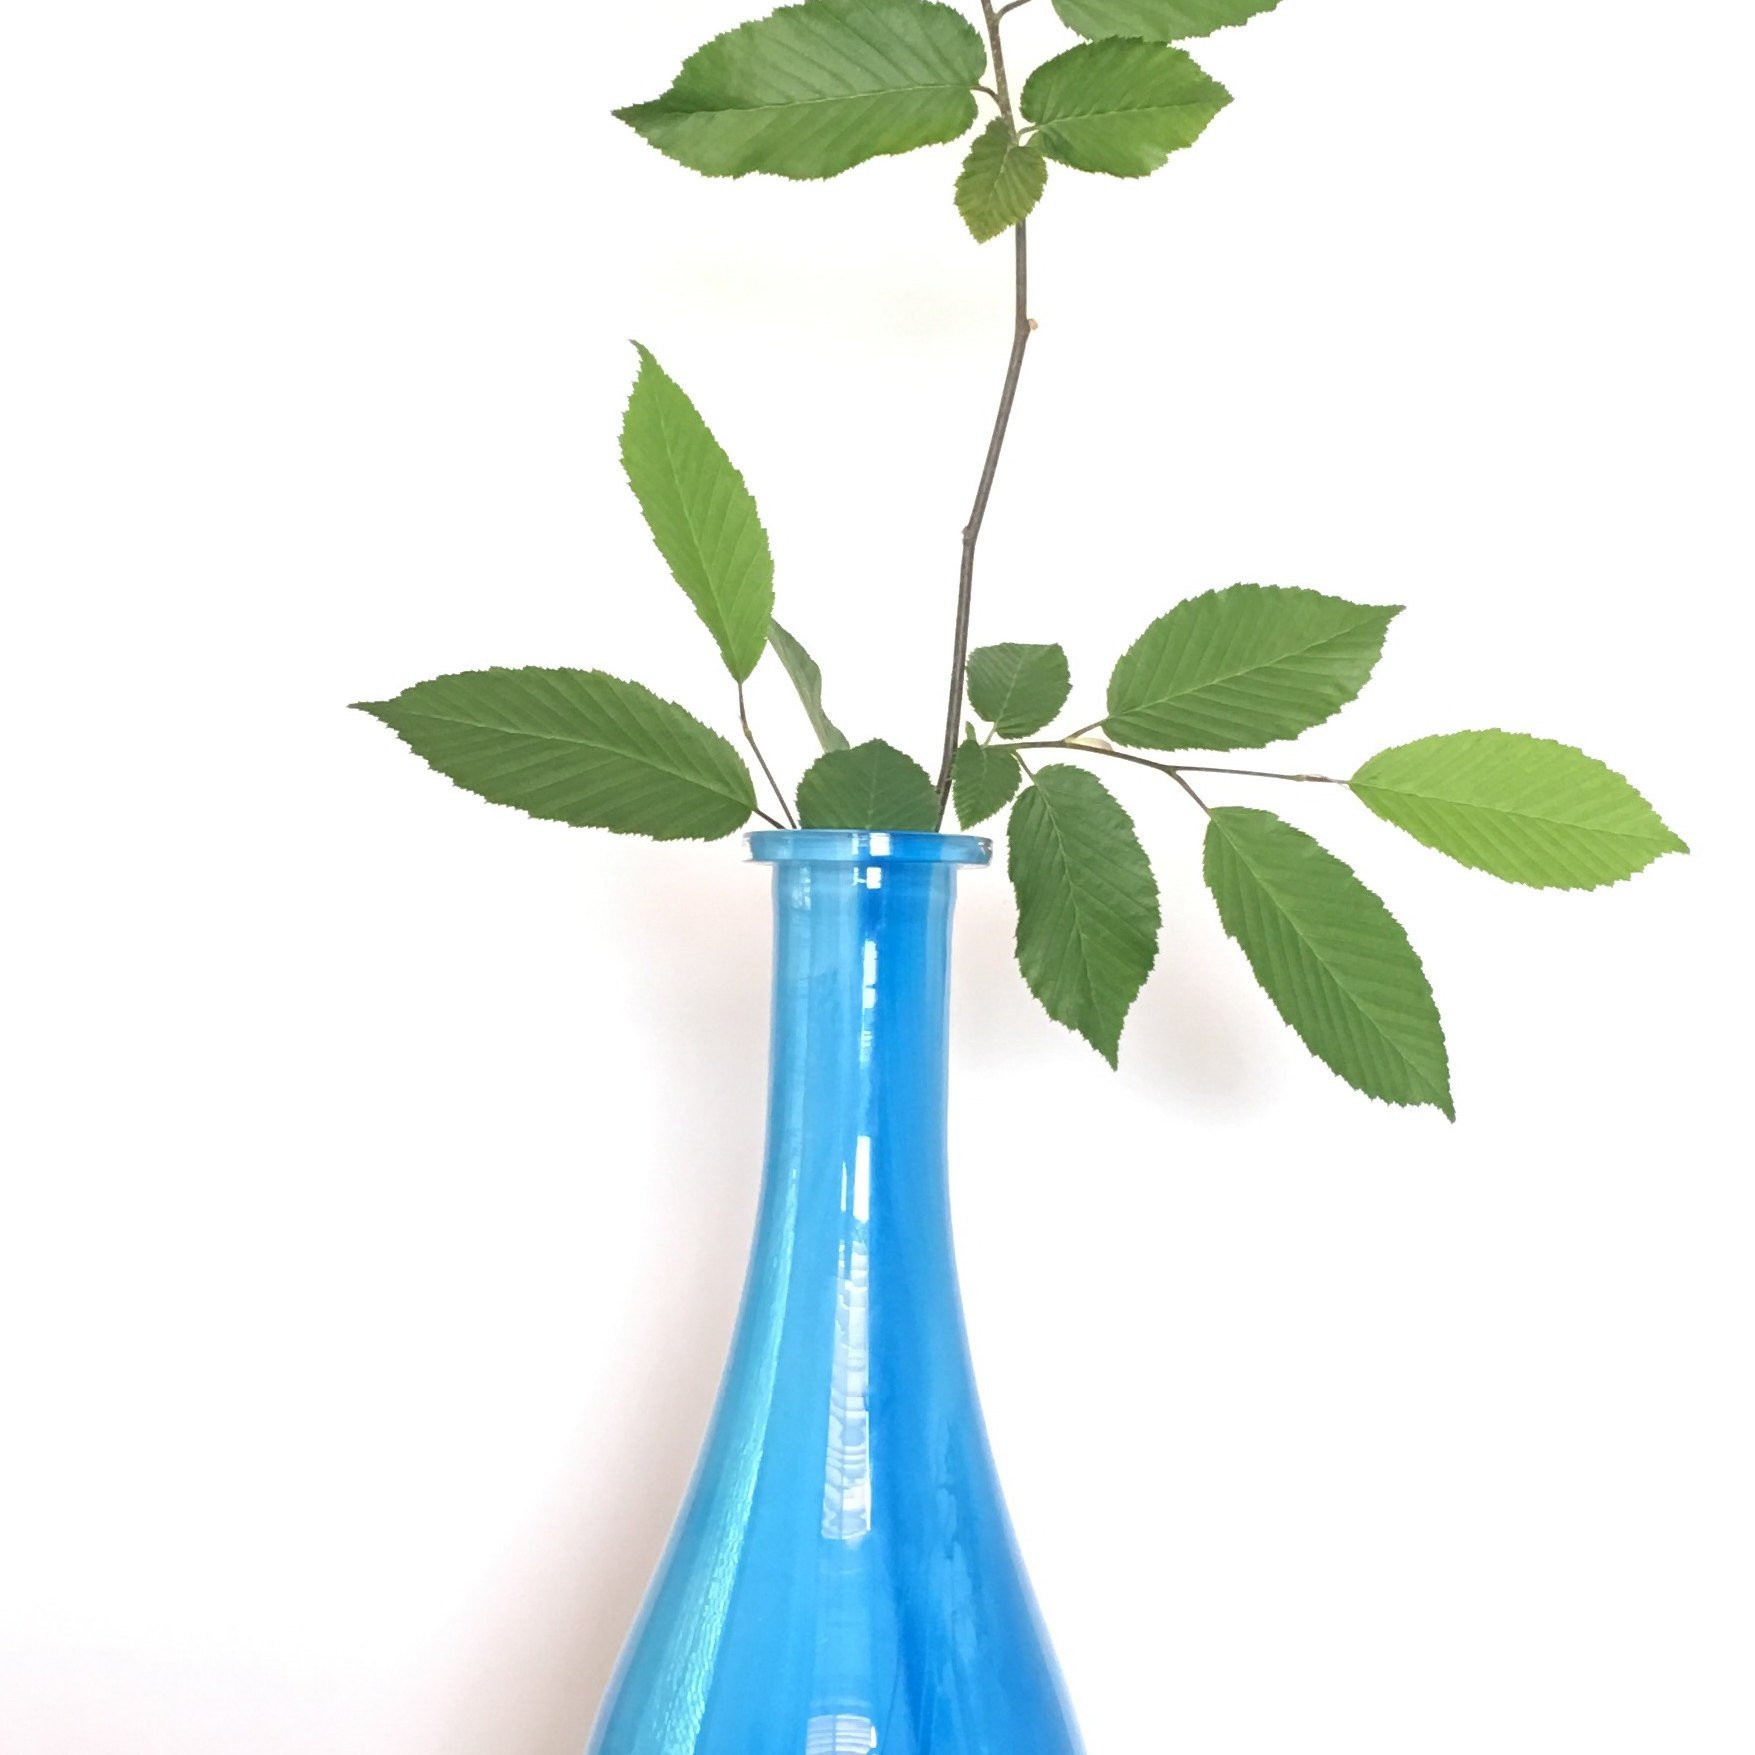 24 Elegant Azure Blue Art Glass Vase 2024 free download azure blue art glass vase of dark grey and white cylinder vase hand painted glass art etsy with lyonglassarts